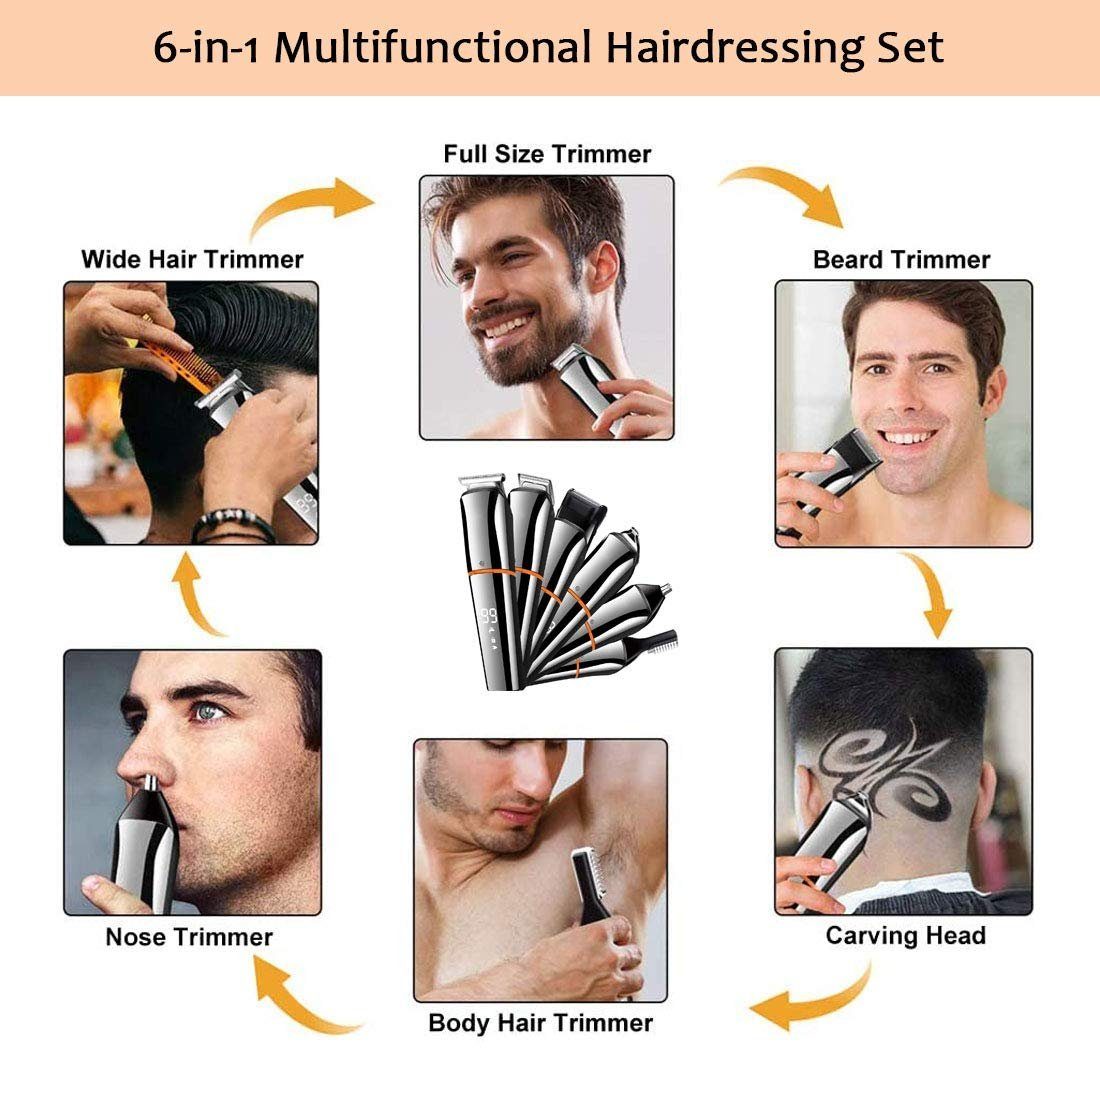 Haarschneider Haiaveng Herren, 1 6 Haarschneider Trimmer/Haarschneider Langhaarschneider Trimmer Männer Profi In Haarschneidemaschine Wasserdicht